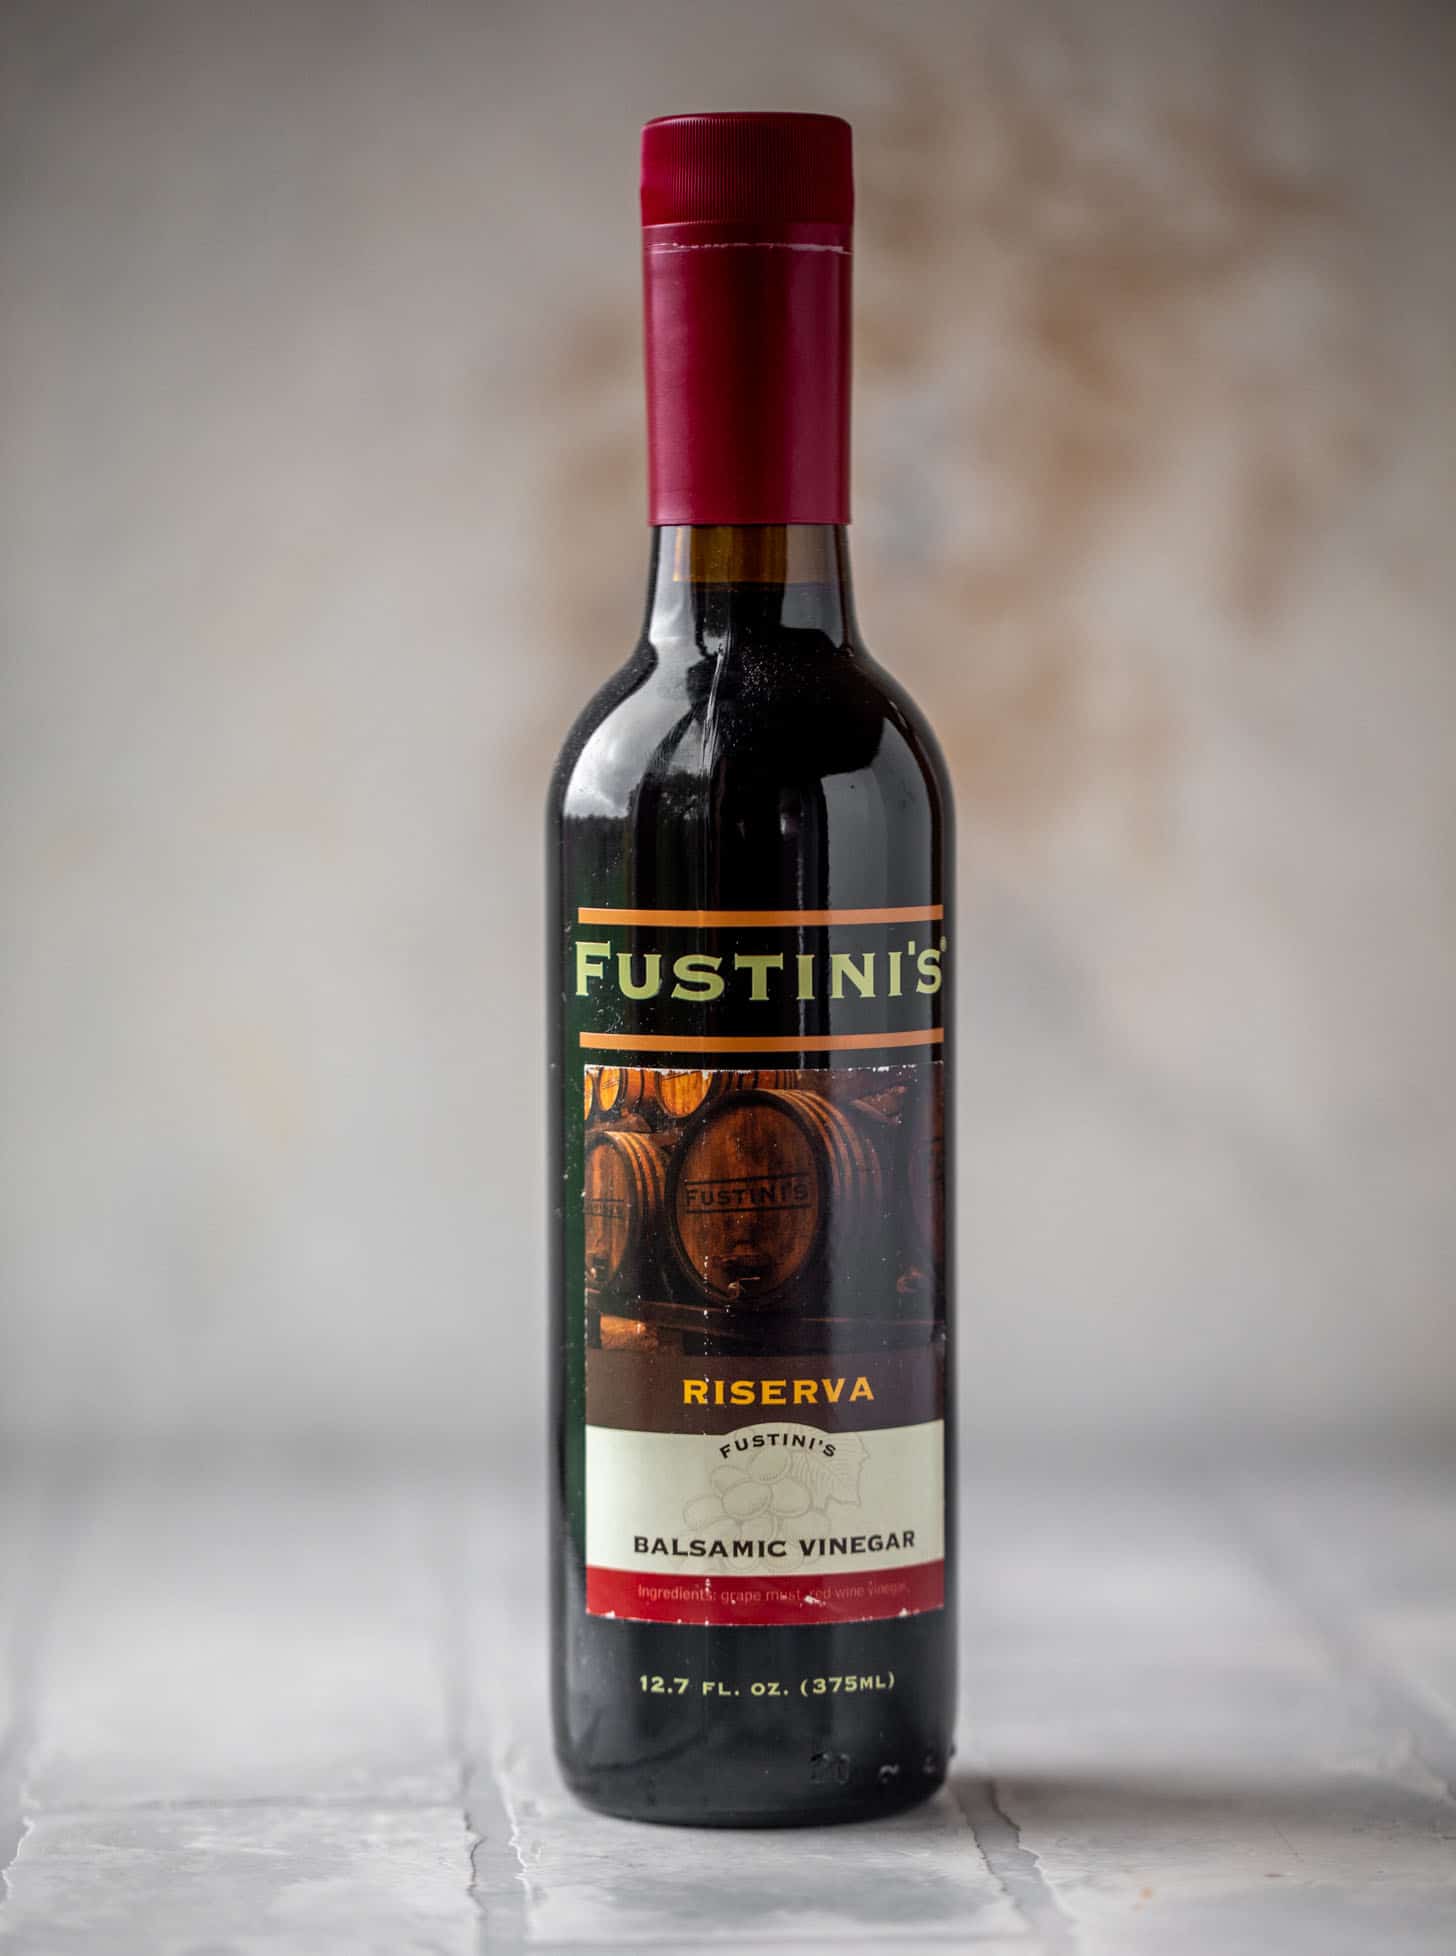 fustini's balsamic vinegar